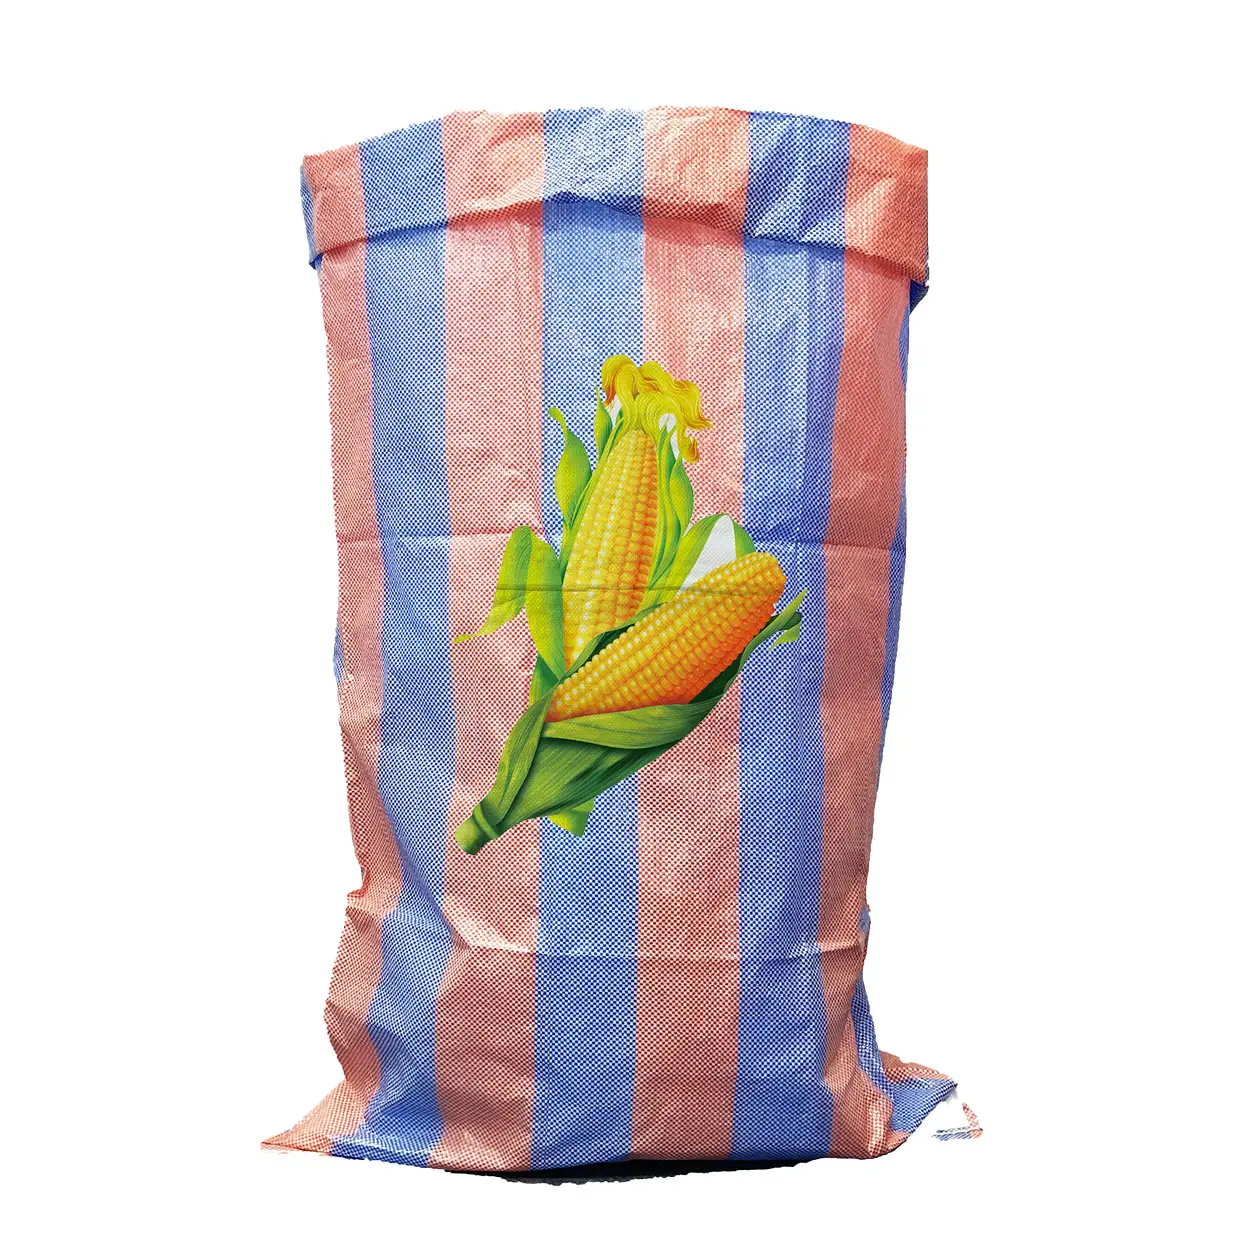 Sacos de polipropileno personalizados, sacos plásticos tecidos pp de 5kg, 25kg e 50kg para embalagem de arroz, milho, trigo, grãos de fertilizantes